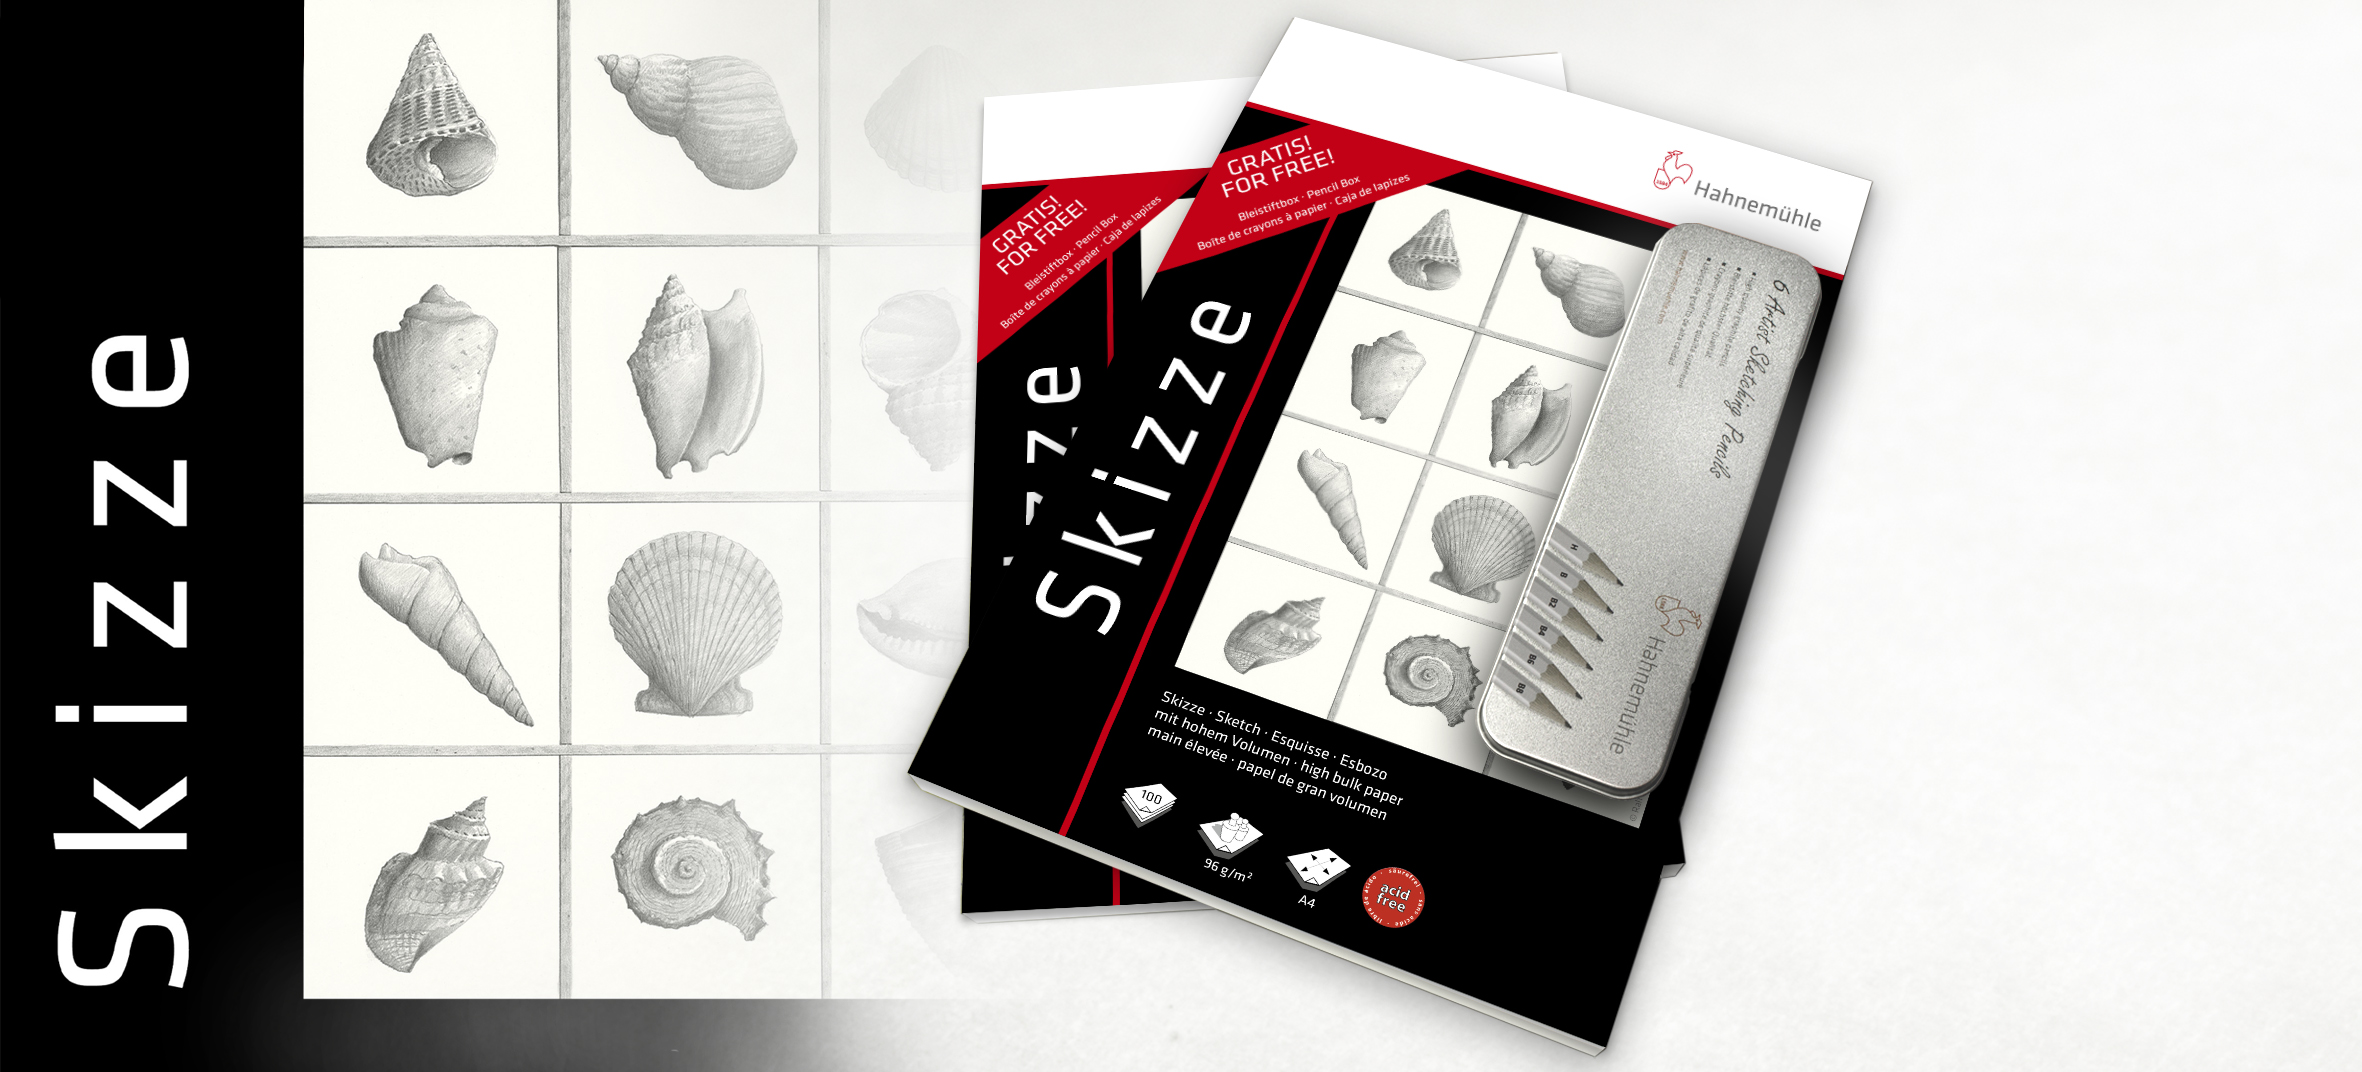 Edición especial: Skizze 96 g/m² + Caja de lápices GRATIS